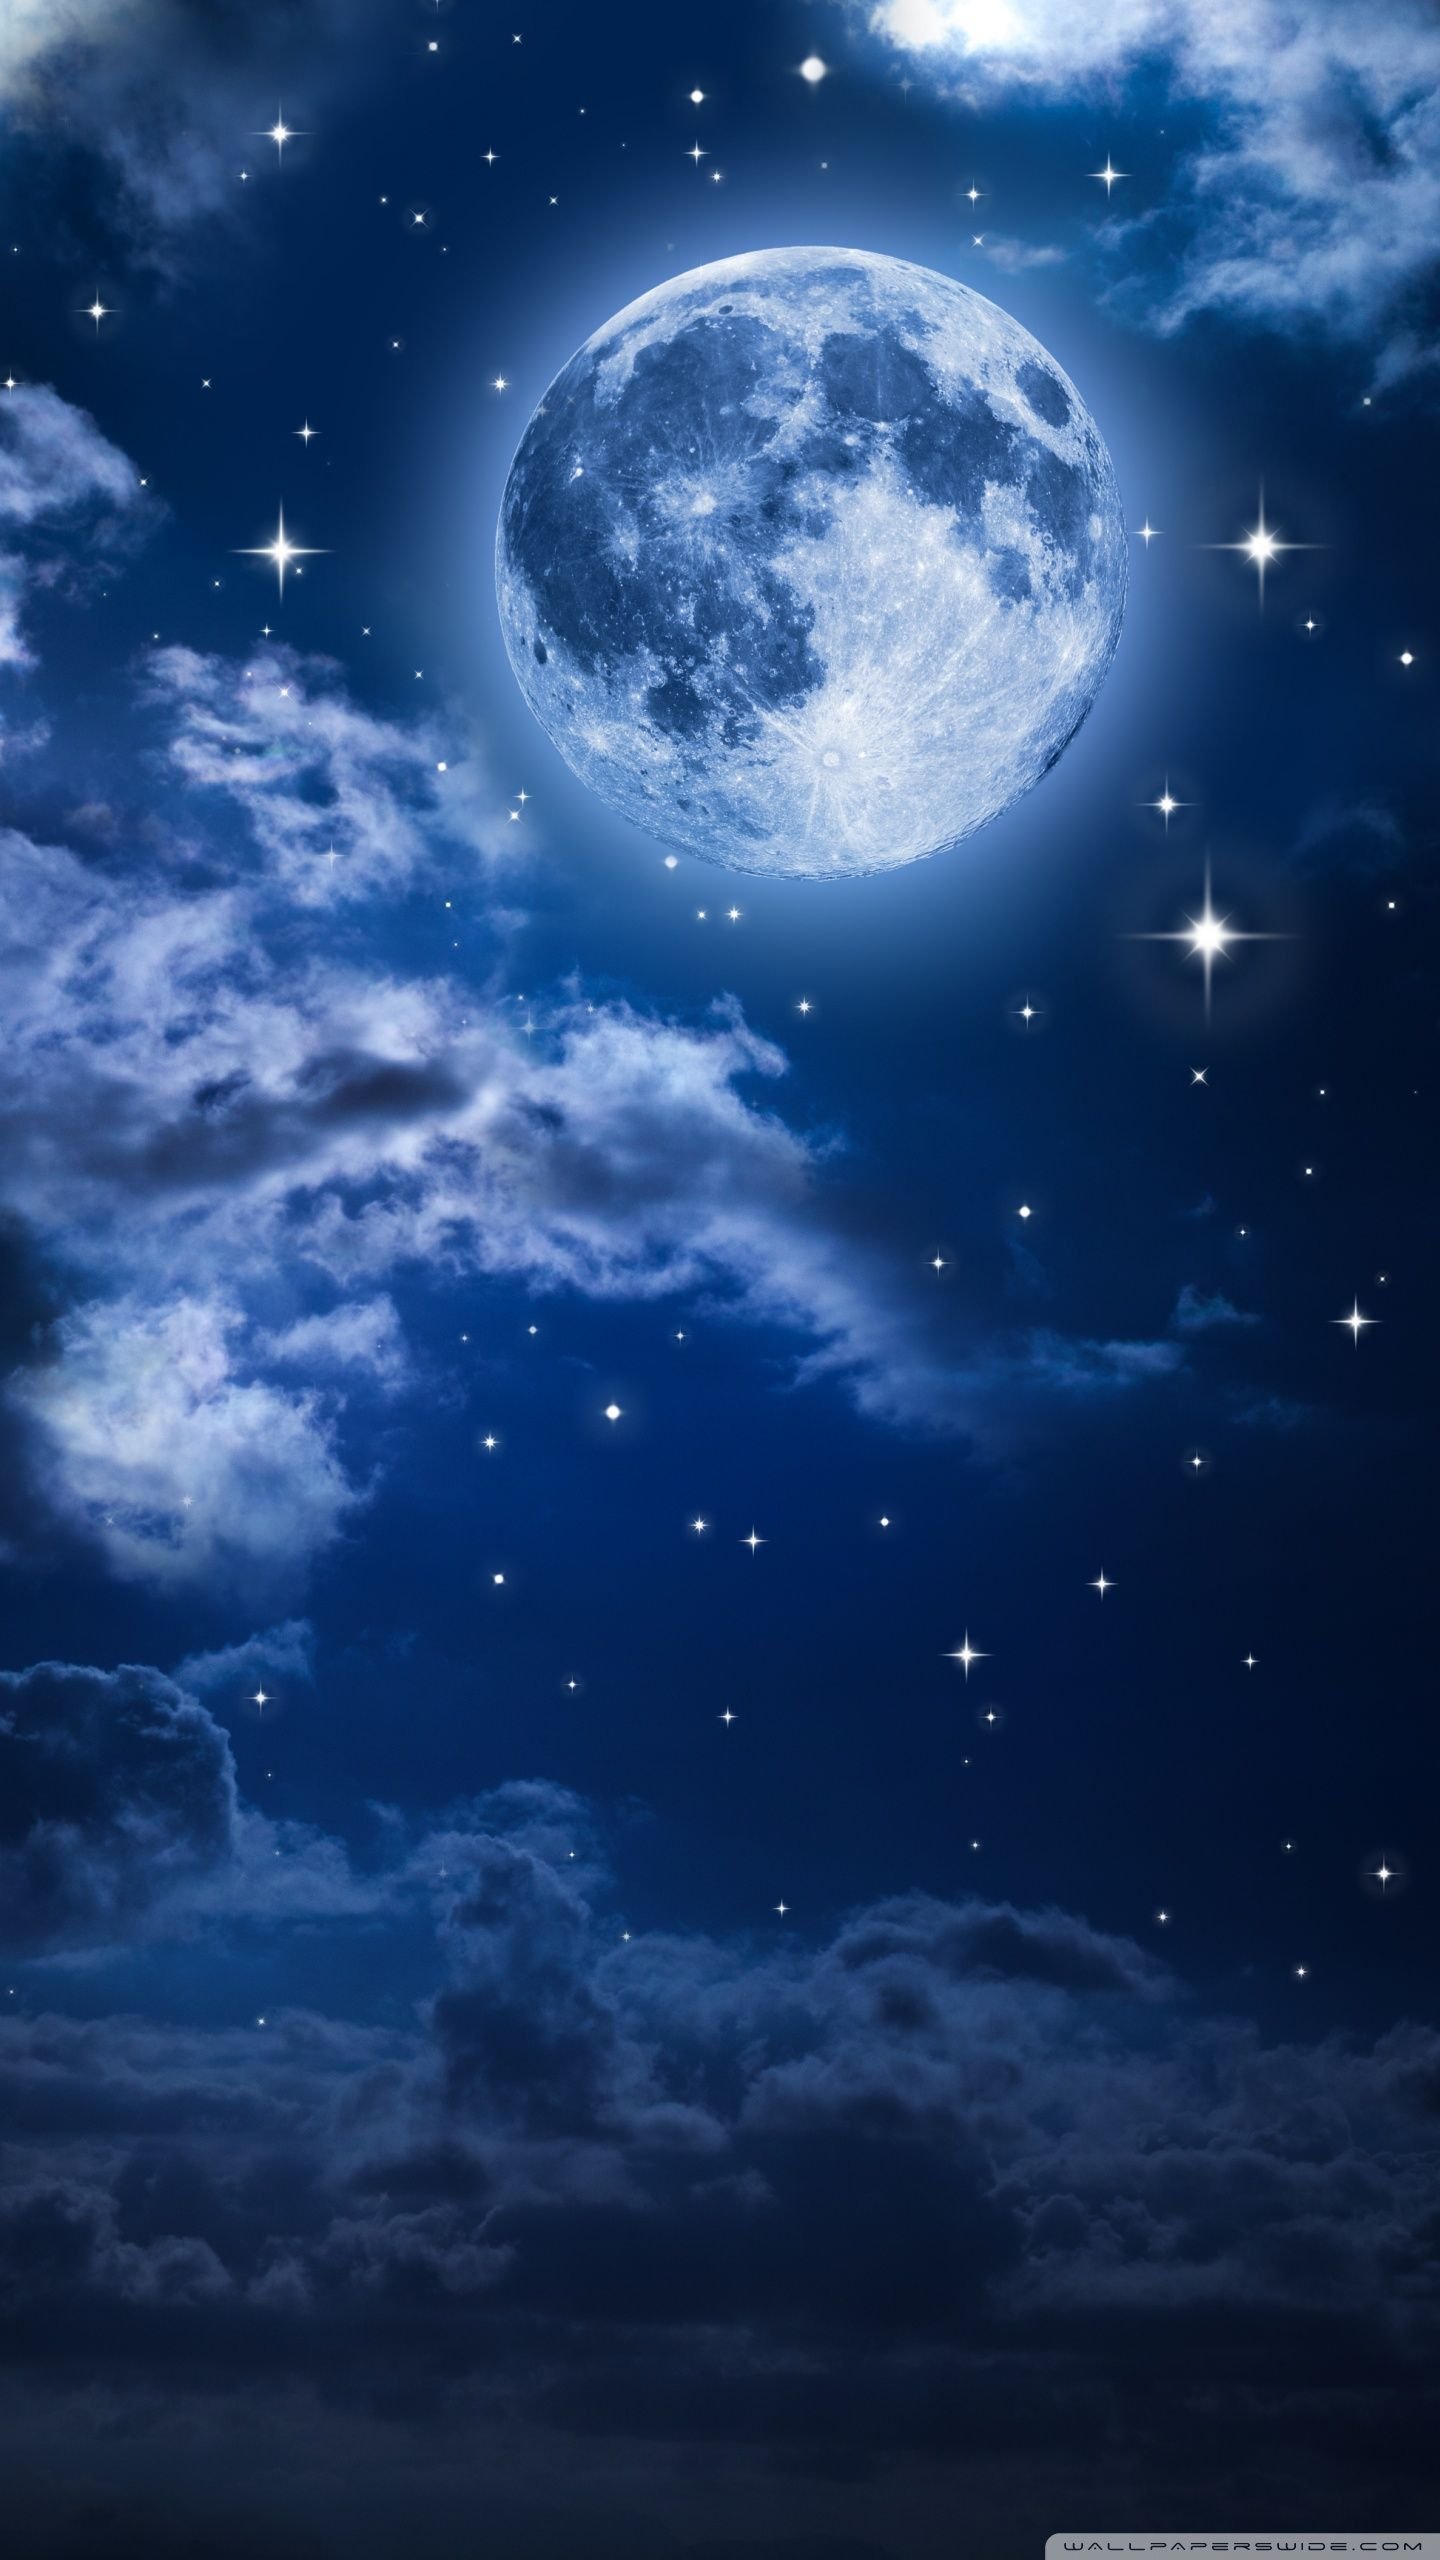 Beautiful night moon wallpaper Images • ♥️@Avinash.....! (@1627577078avira)  on ShareChat